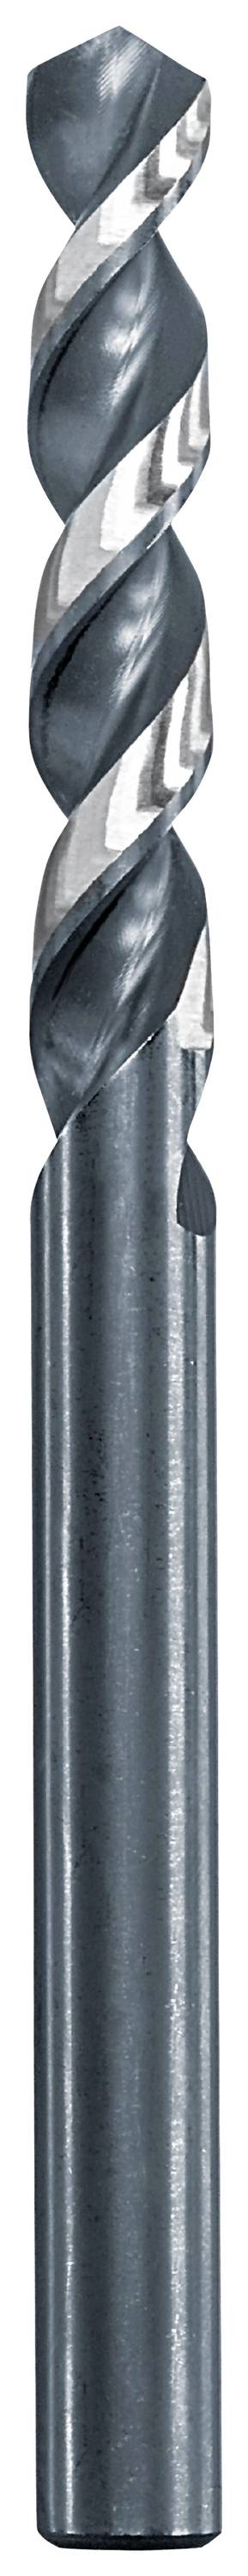 KWB 258620 Metall-Spiralbohrer 2 mm Gesamtlänge 49 mm 1 St.